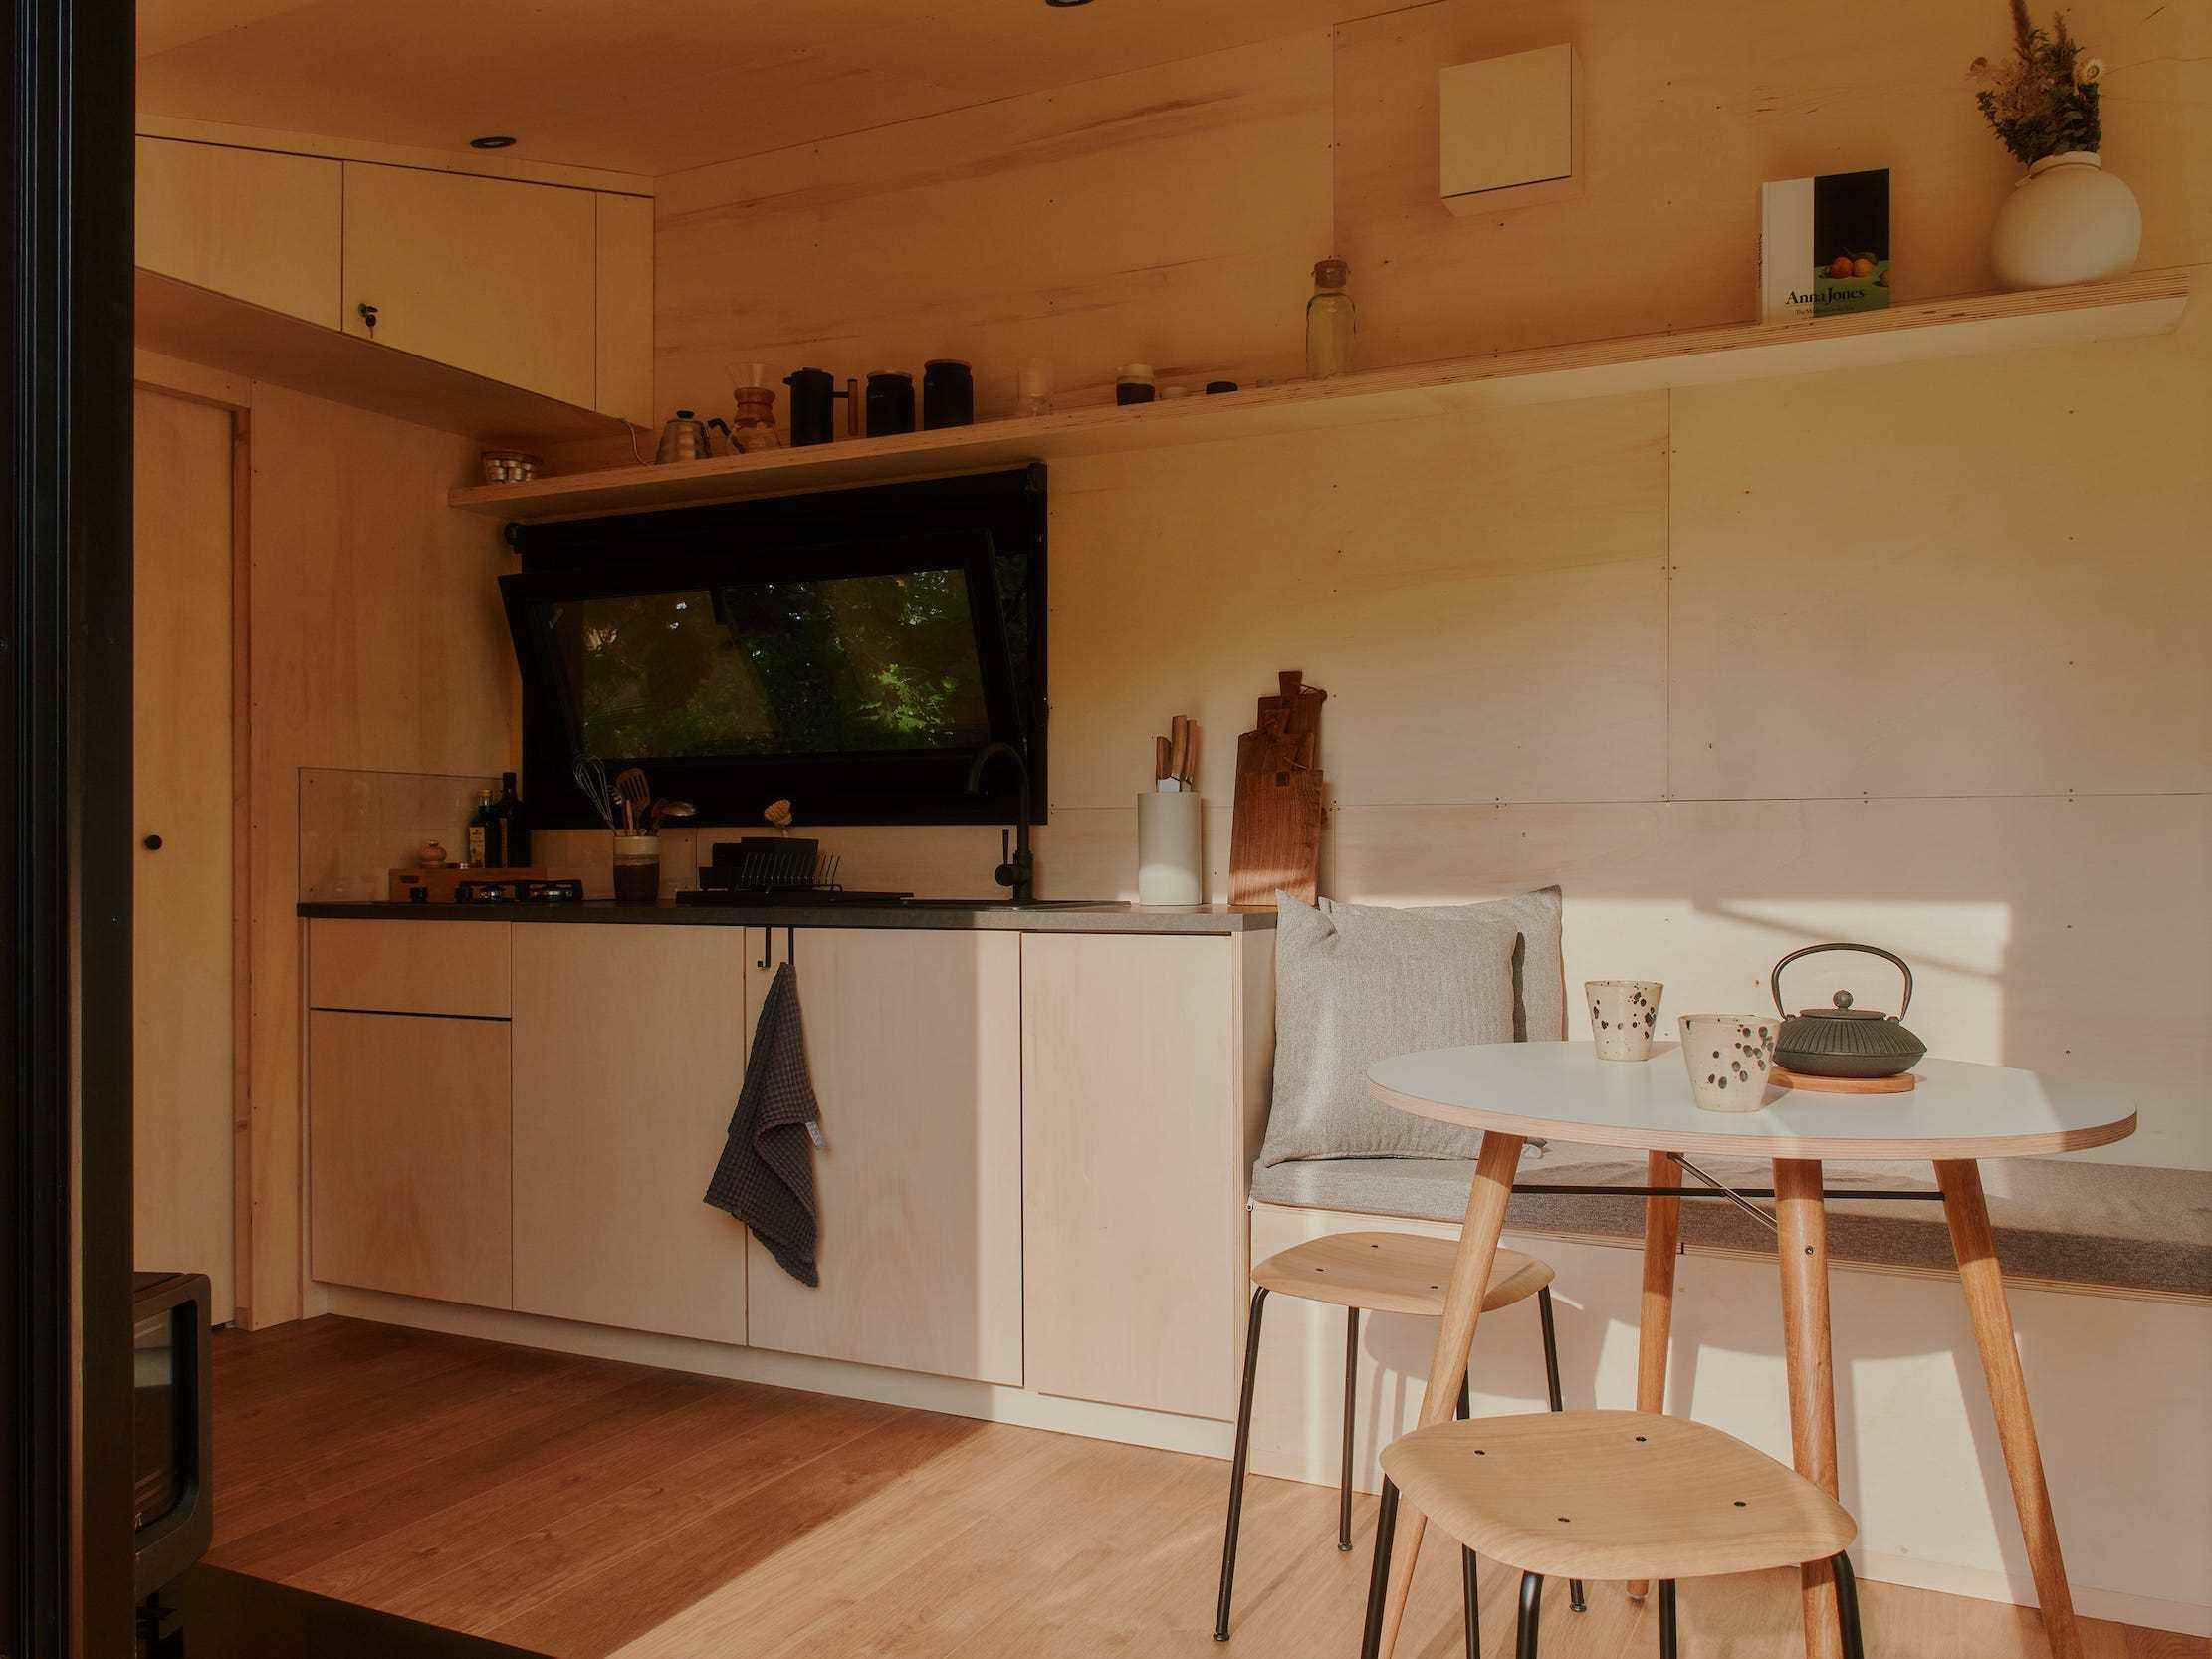 Ein Blick in eine Raus-Hütte mit Esstisch, Küche, Fenstern mit Blick in die Natur.